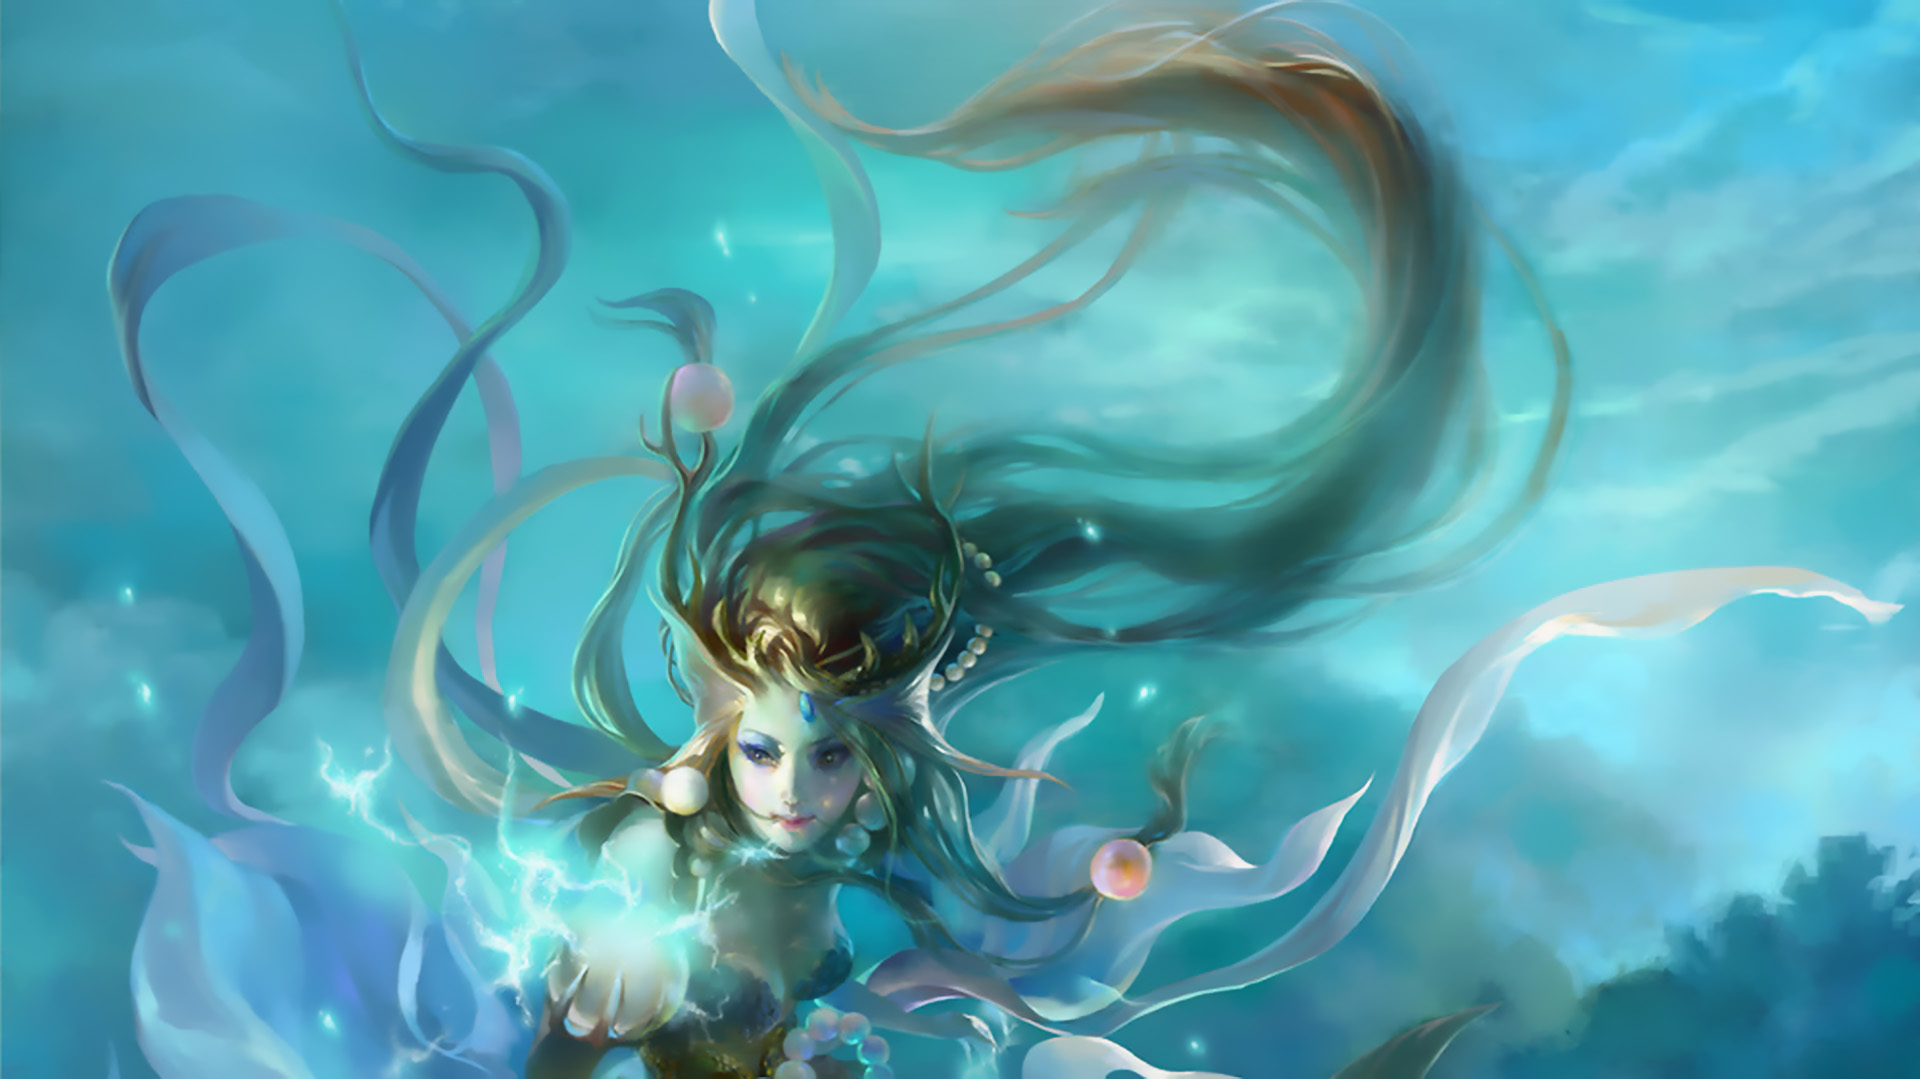 Descarga gratuita de fondo de pantalla para móvil de Fantasía, Sirena.